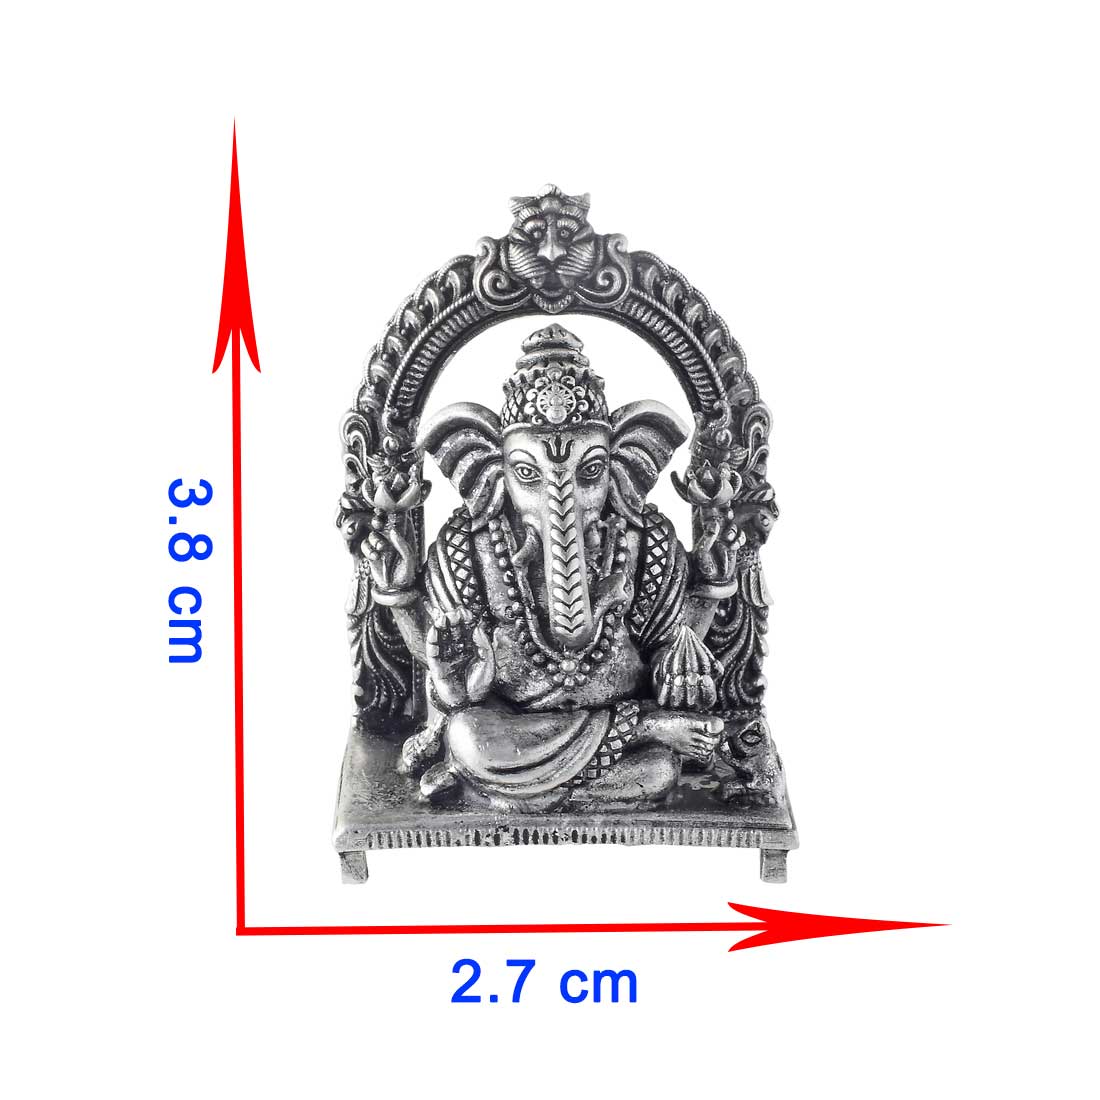 size of ganesh idol